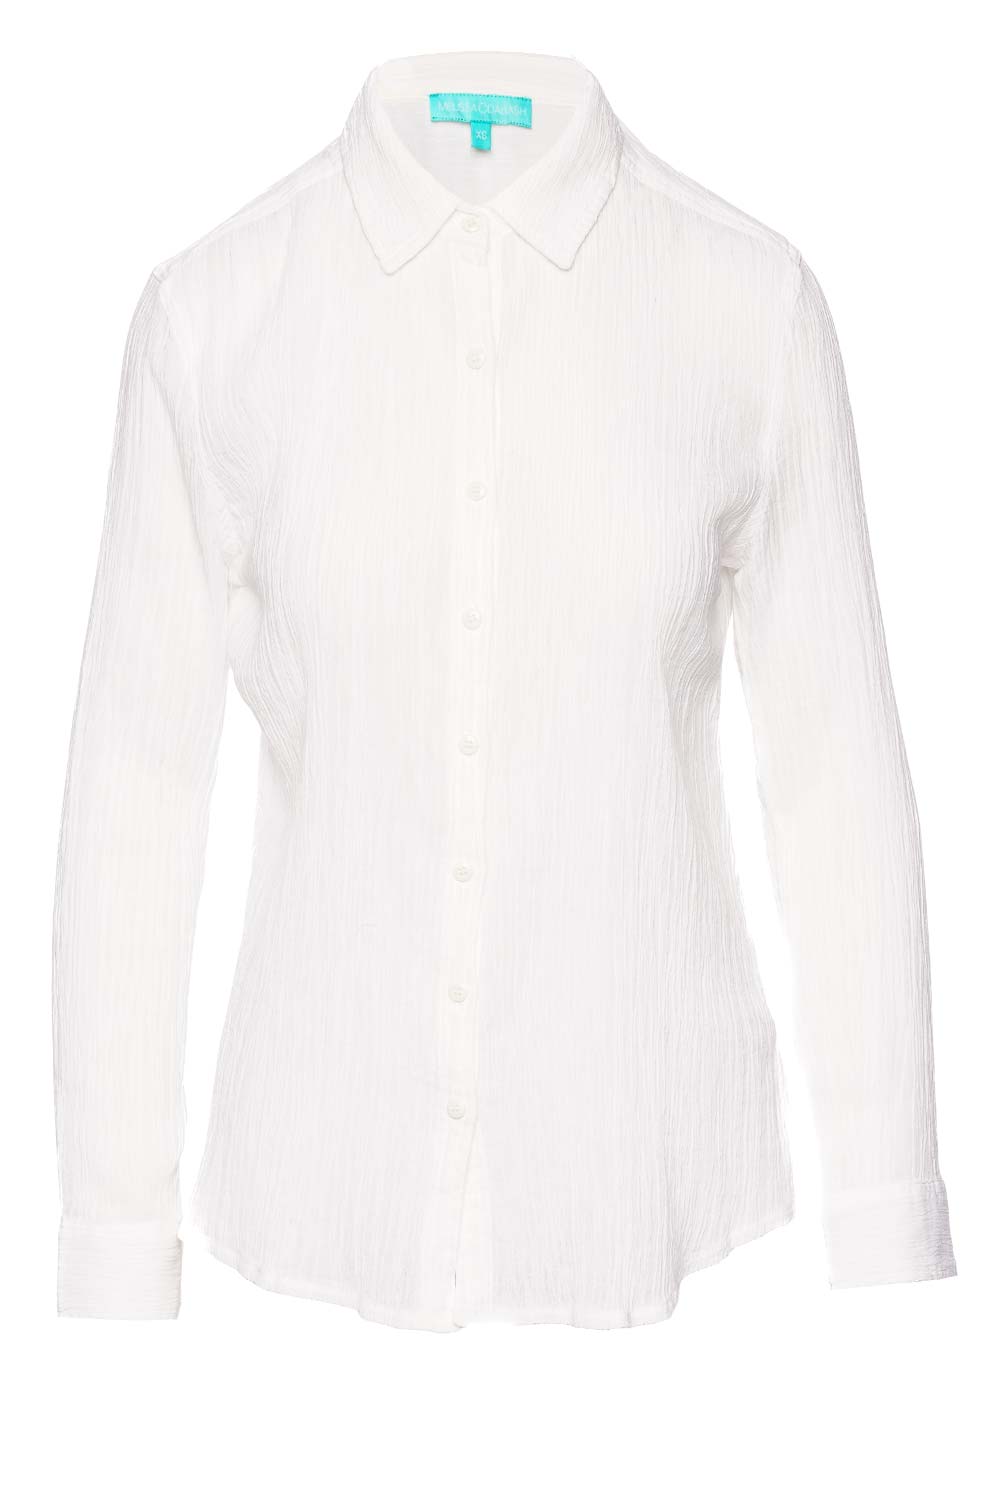 Melissa Odabash Tina White Cotton Gauze Cover Up Shirt